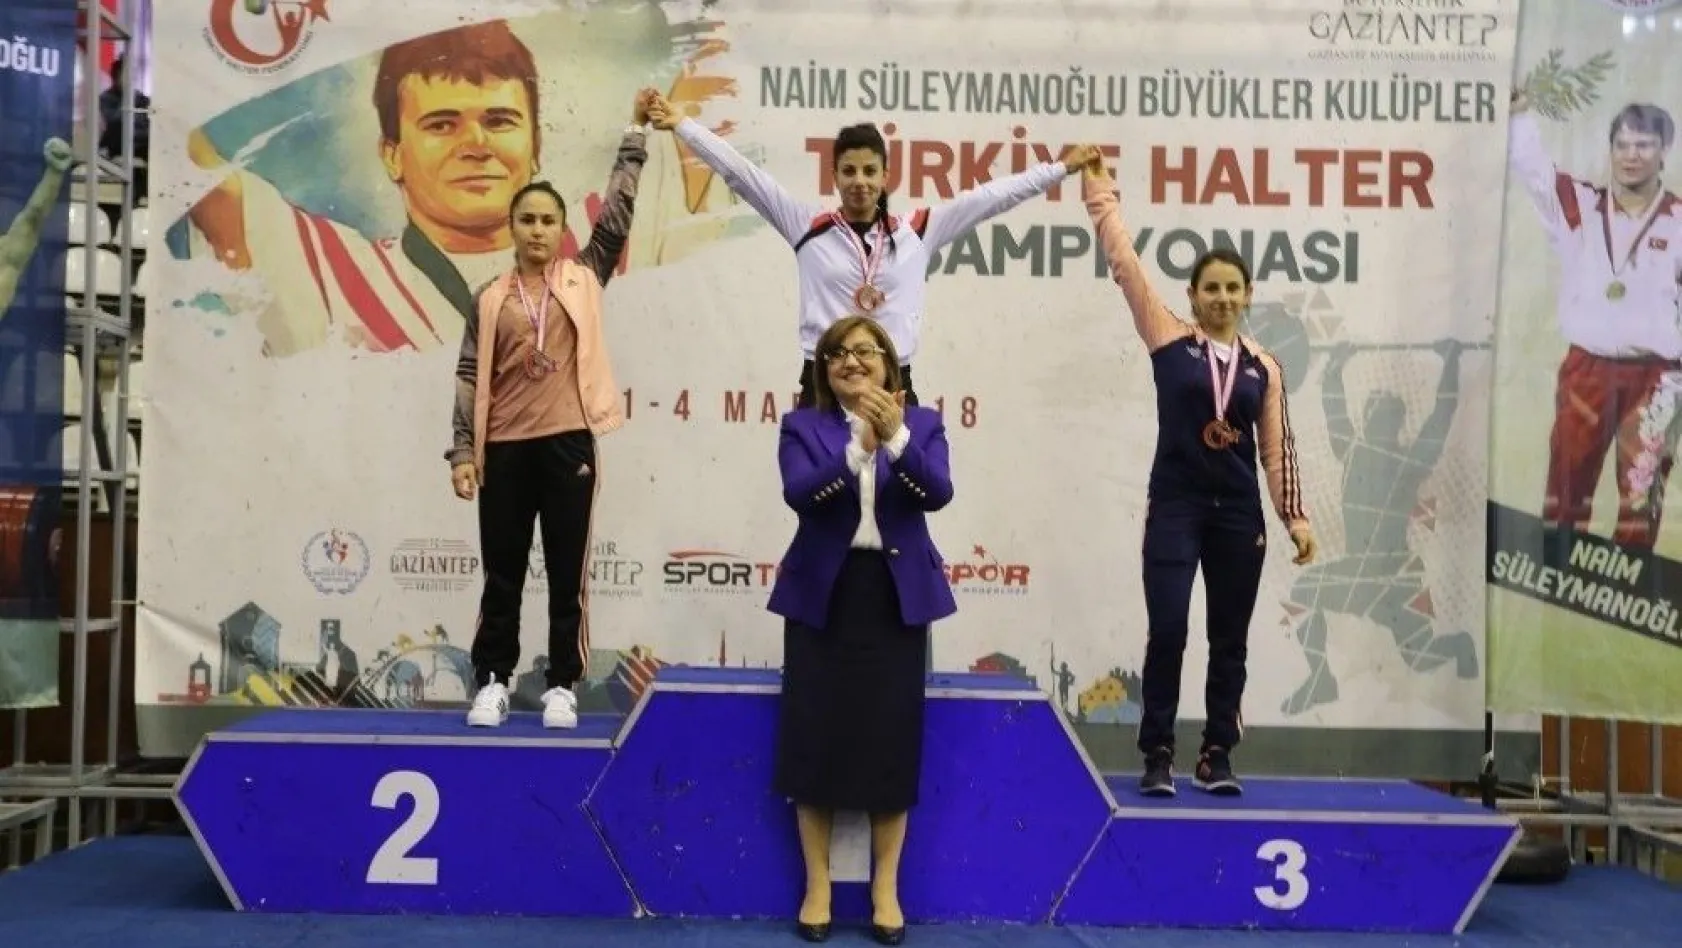 Adıyamanlı halter sporcusu Türkiye ikincisi oldu
